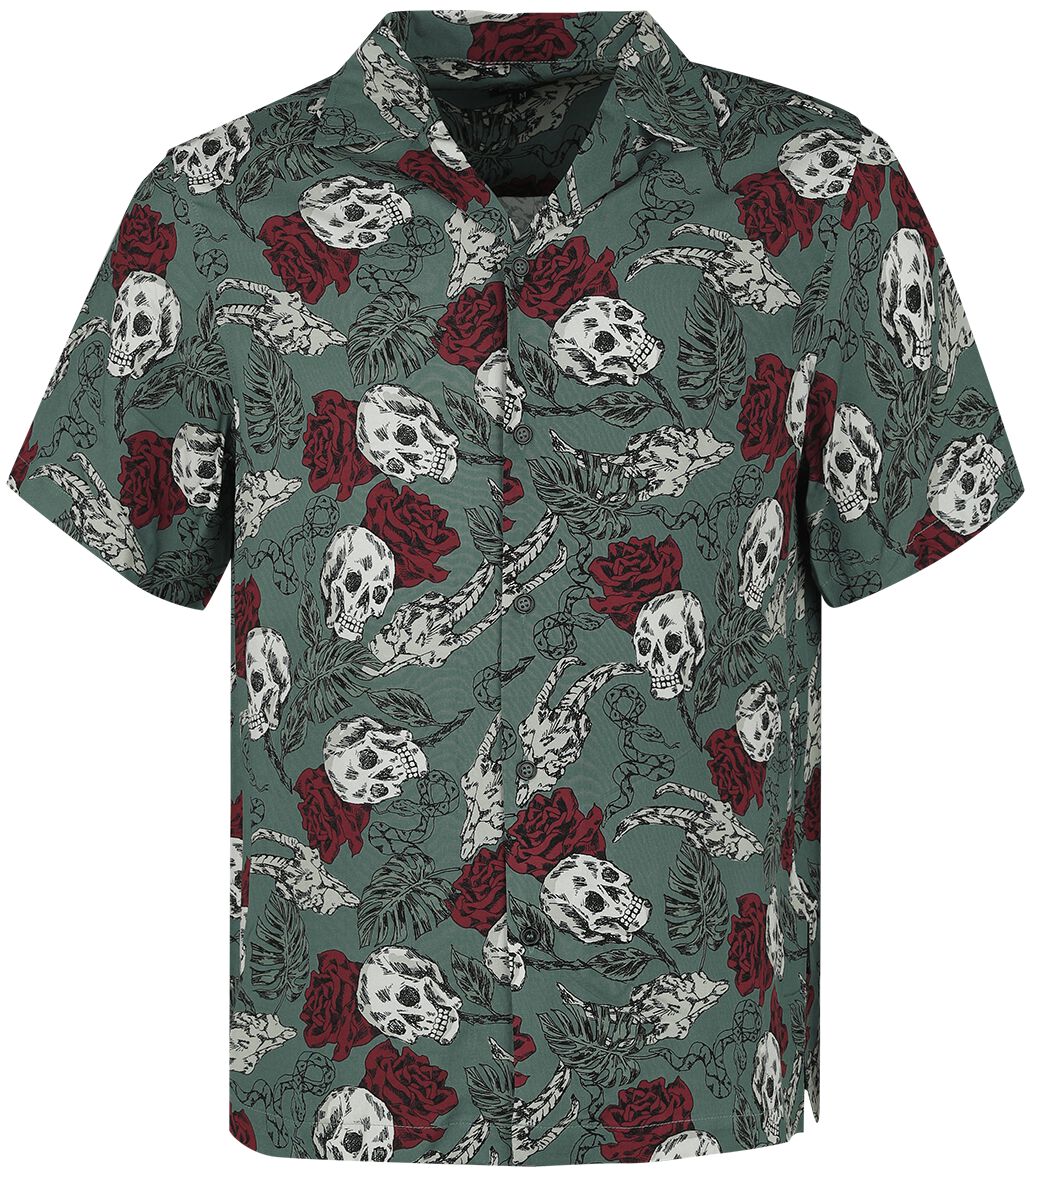 Image of Camicia Maniche Corte Gothic di Chet Rock - Skulls & Roses - S a XXL - Uomo - verde scuro